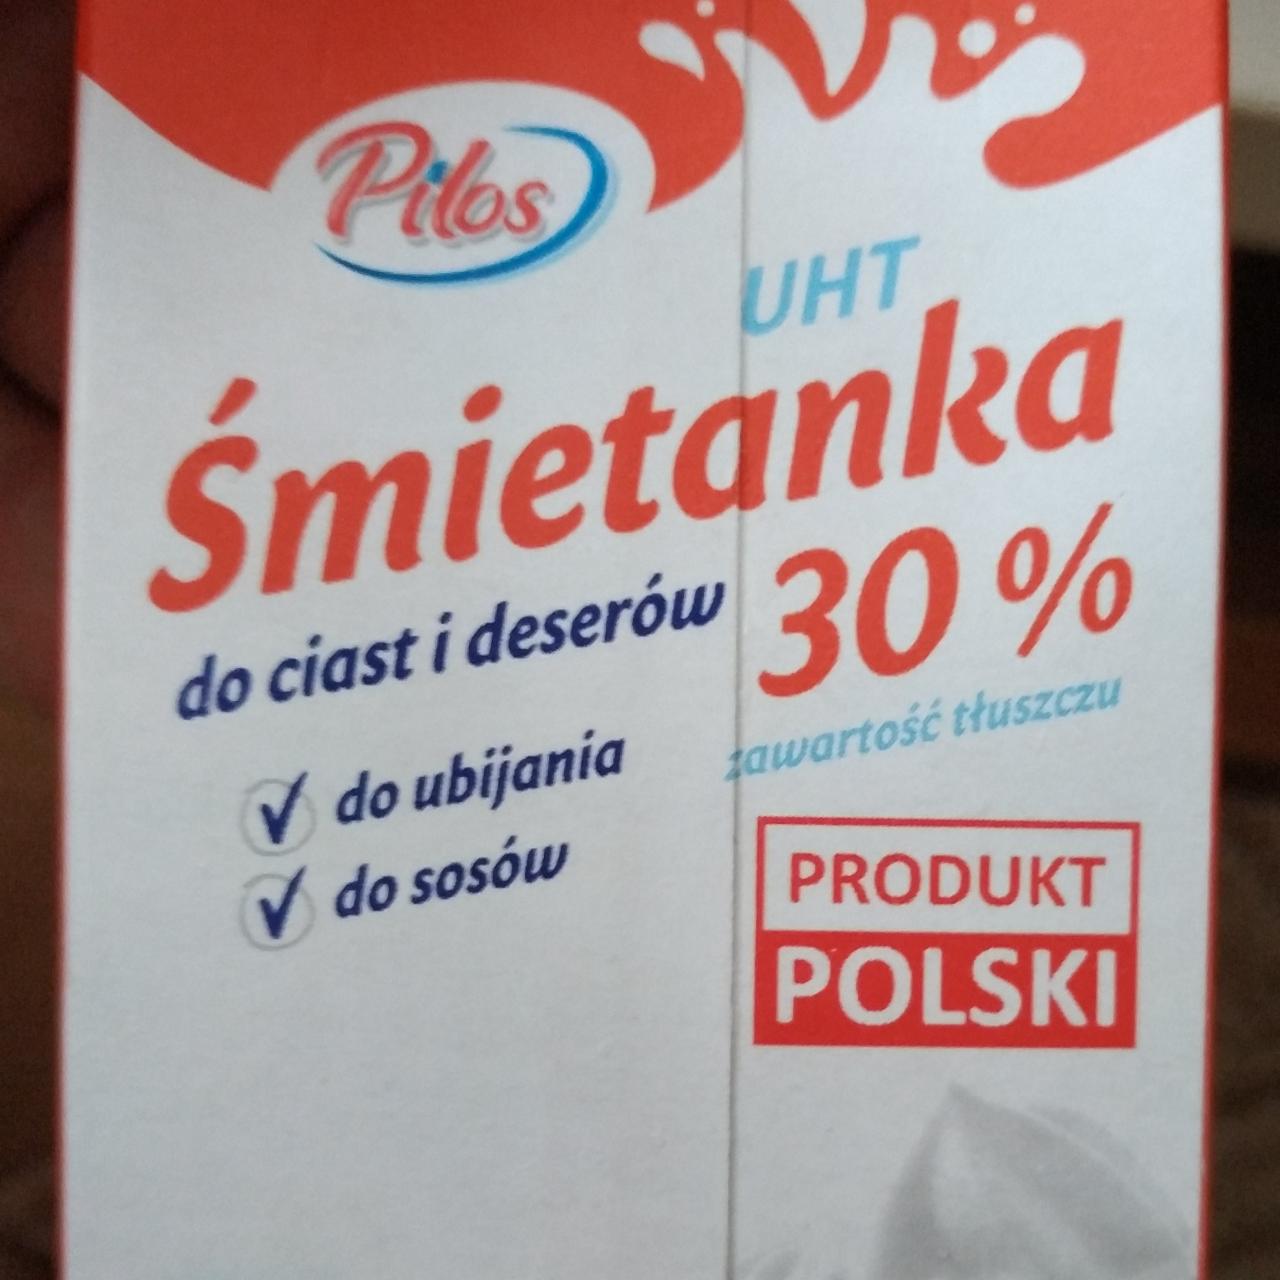 Fotografie - Śmietanka UHT 30% Pilos